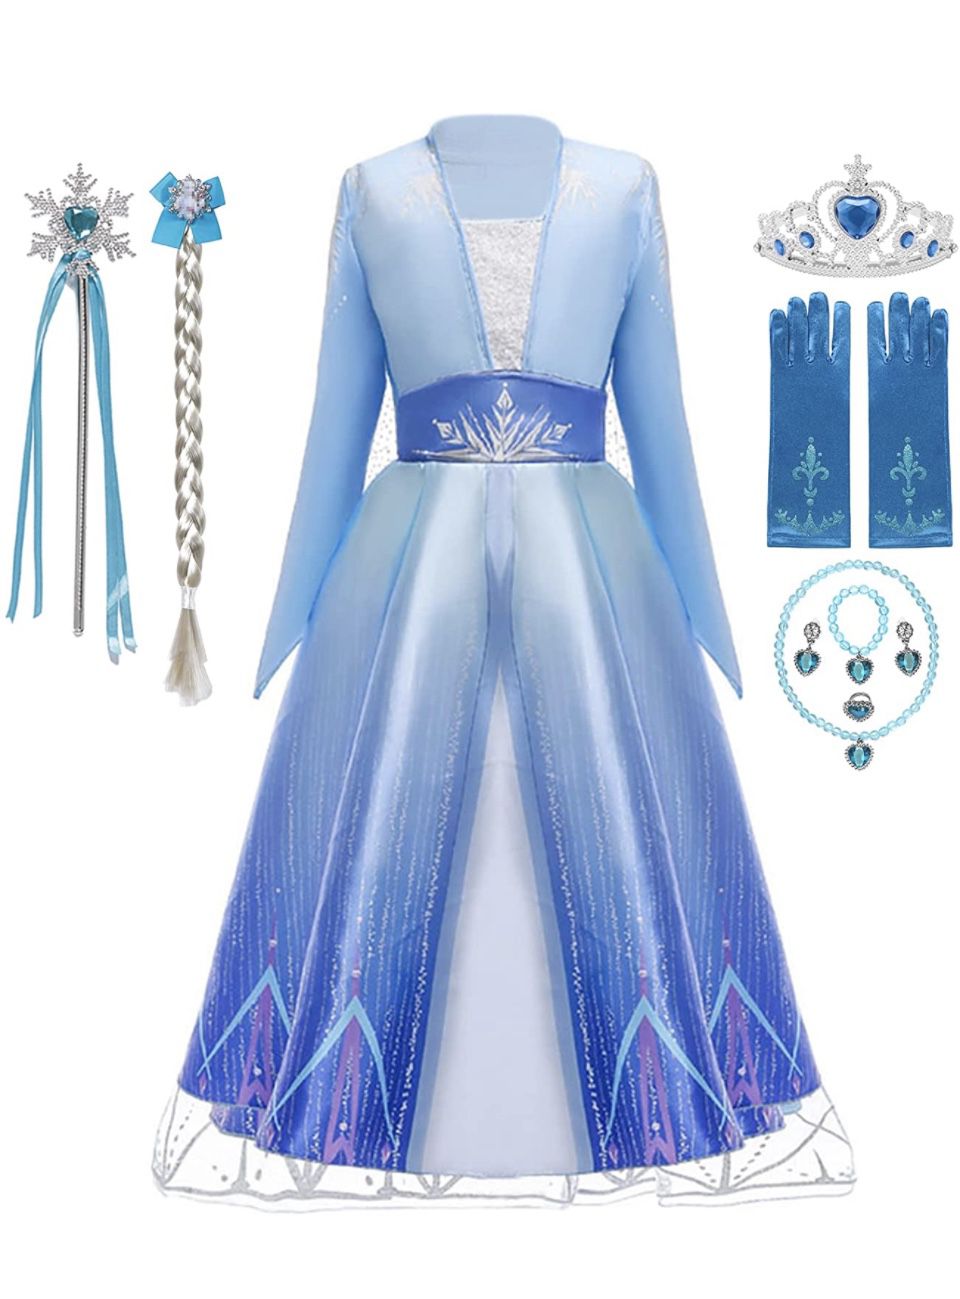 Elsa Dress Up Set